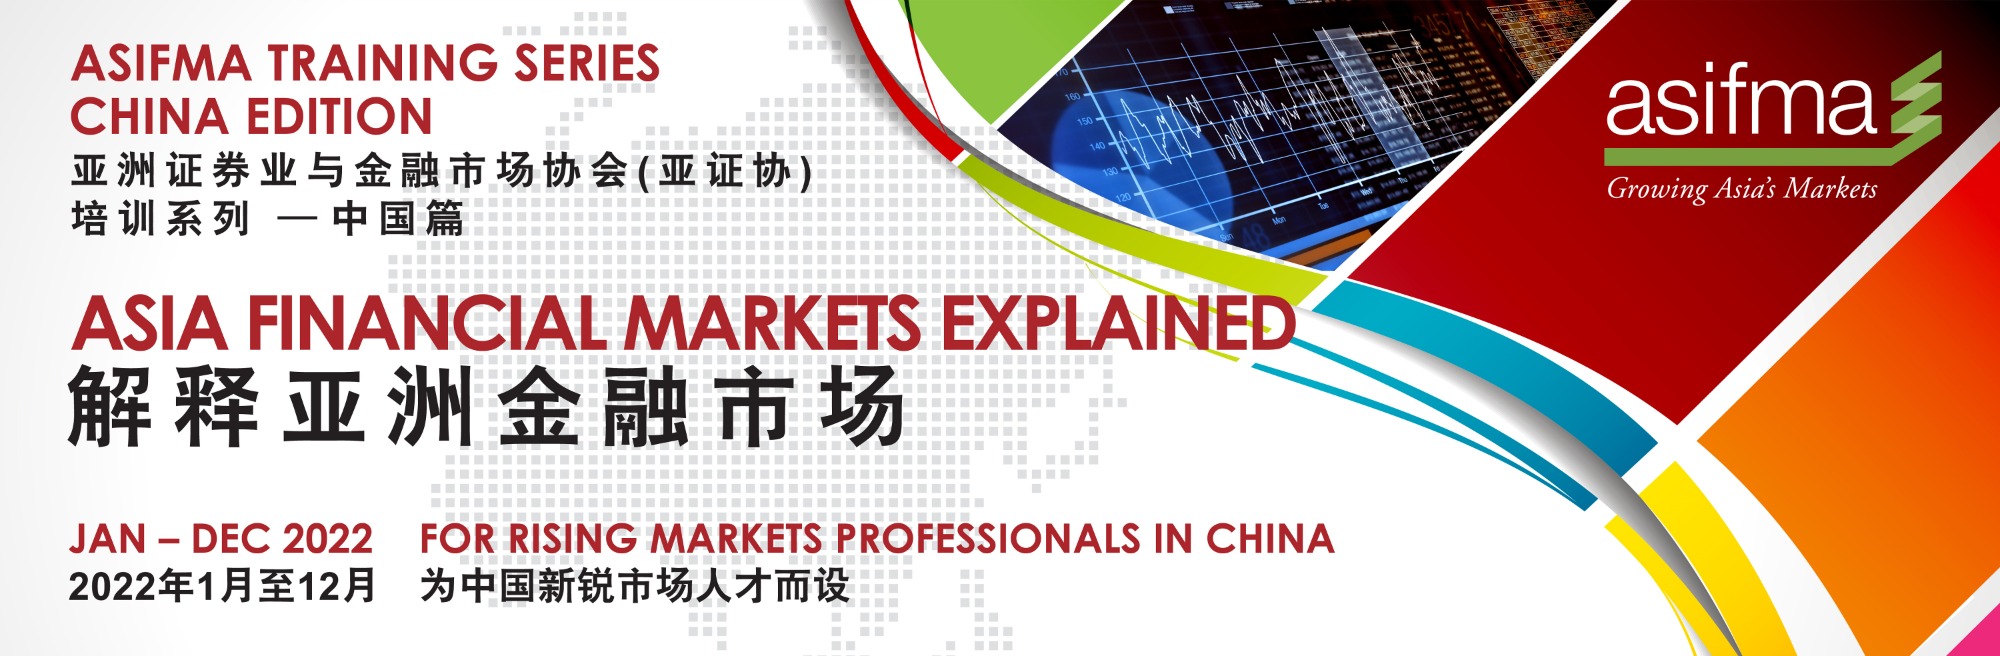 培训推荐：解释亚洲金融市场——ASIFMA 亚证协培训系列中国篇